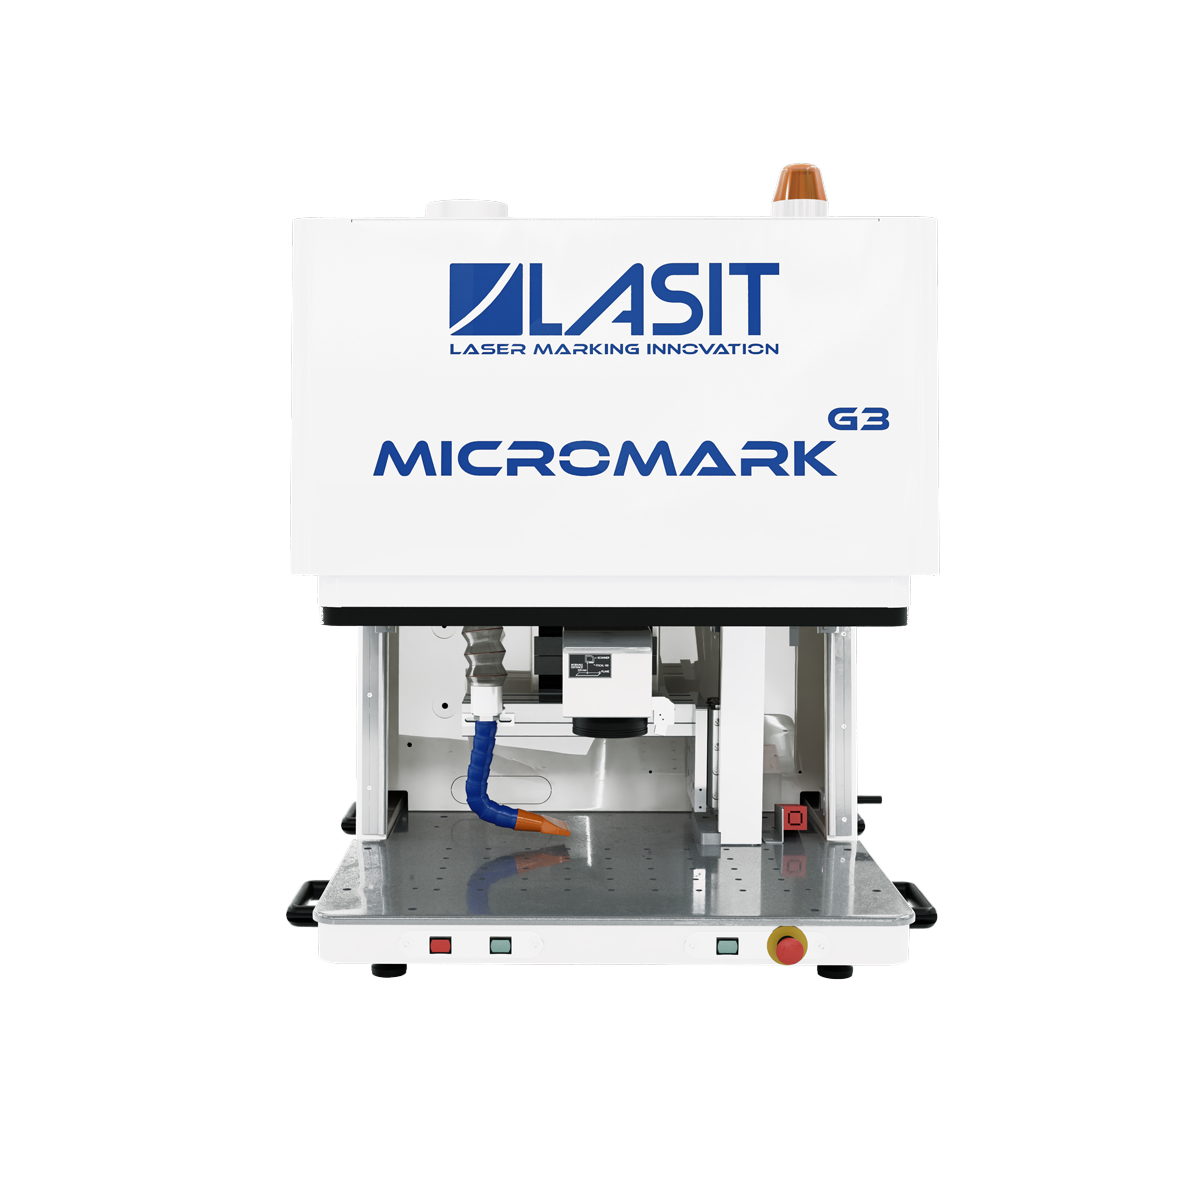 Micromark_web-02 LASIT responde a las 10 preguntas más frecuentes sobre el marcado láser